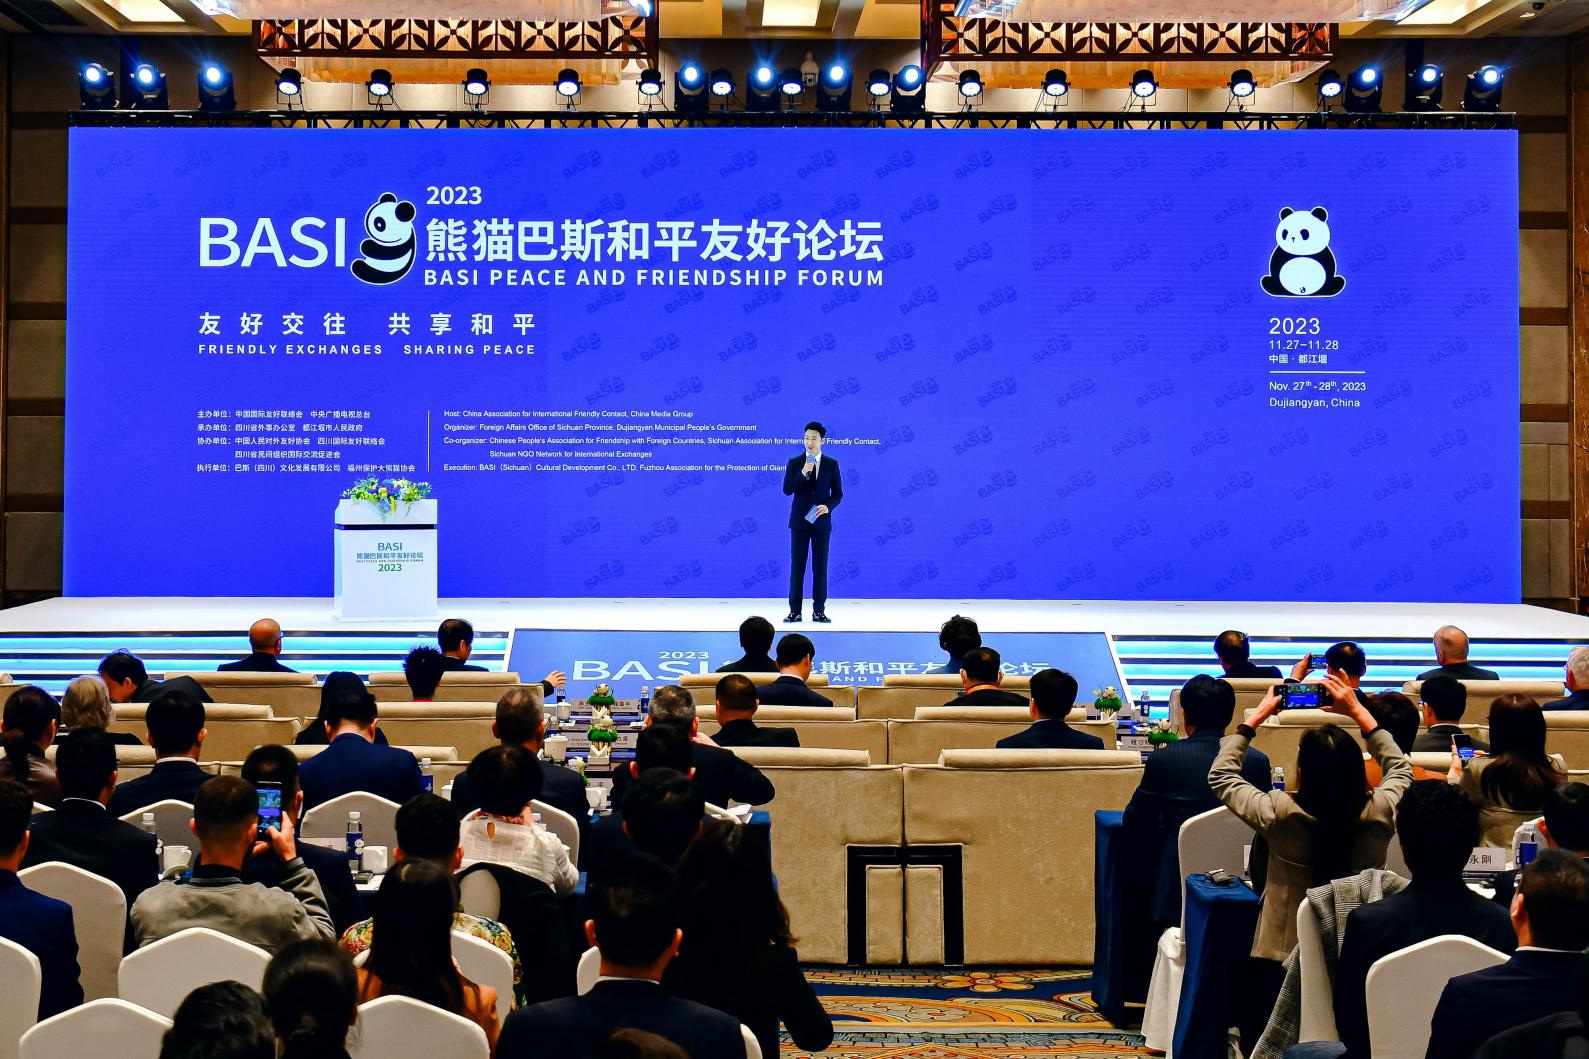 2023年熊貓巴斯和平友好論壇在都江堰舉辦